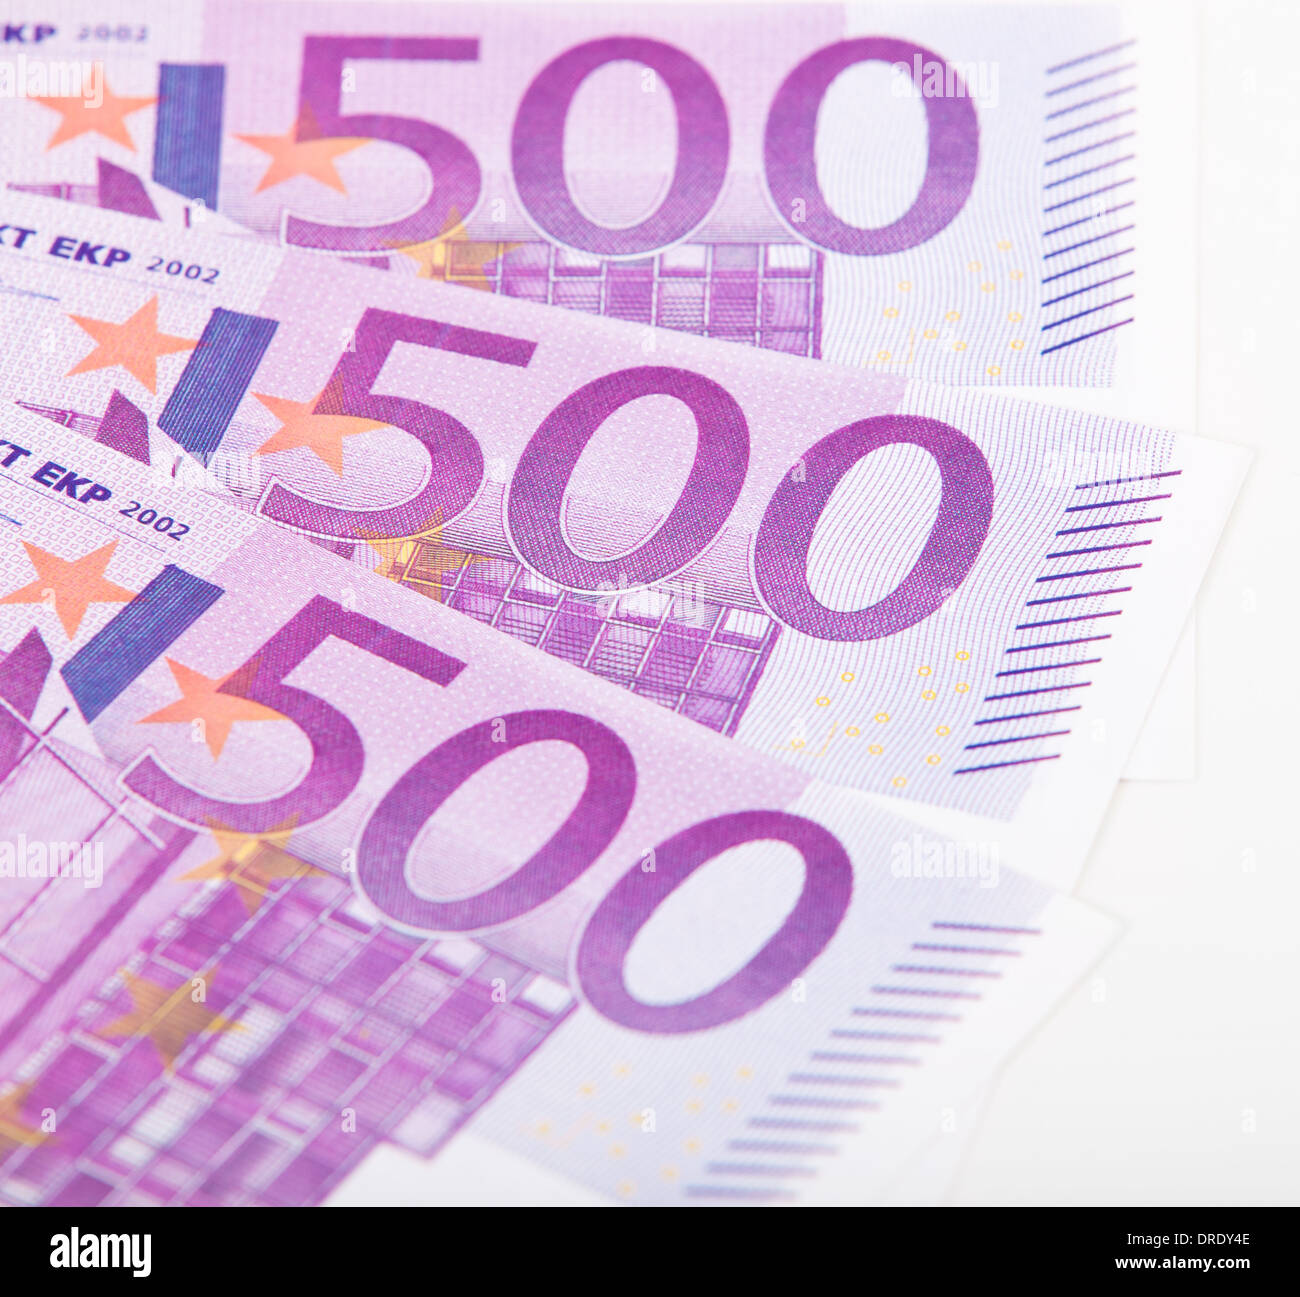 Various Euro notes Stock Photo